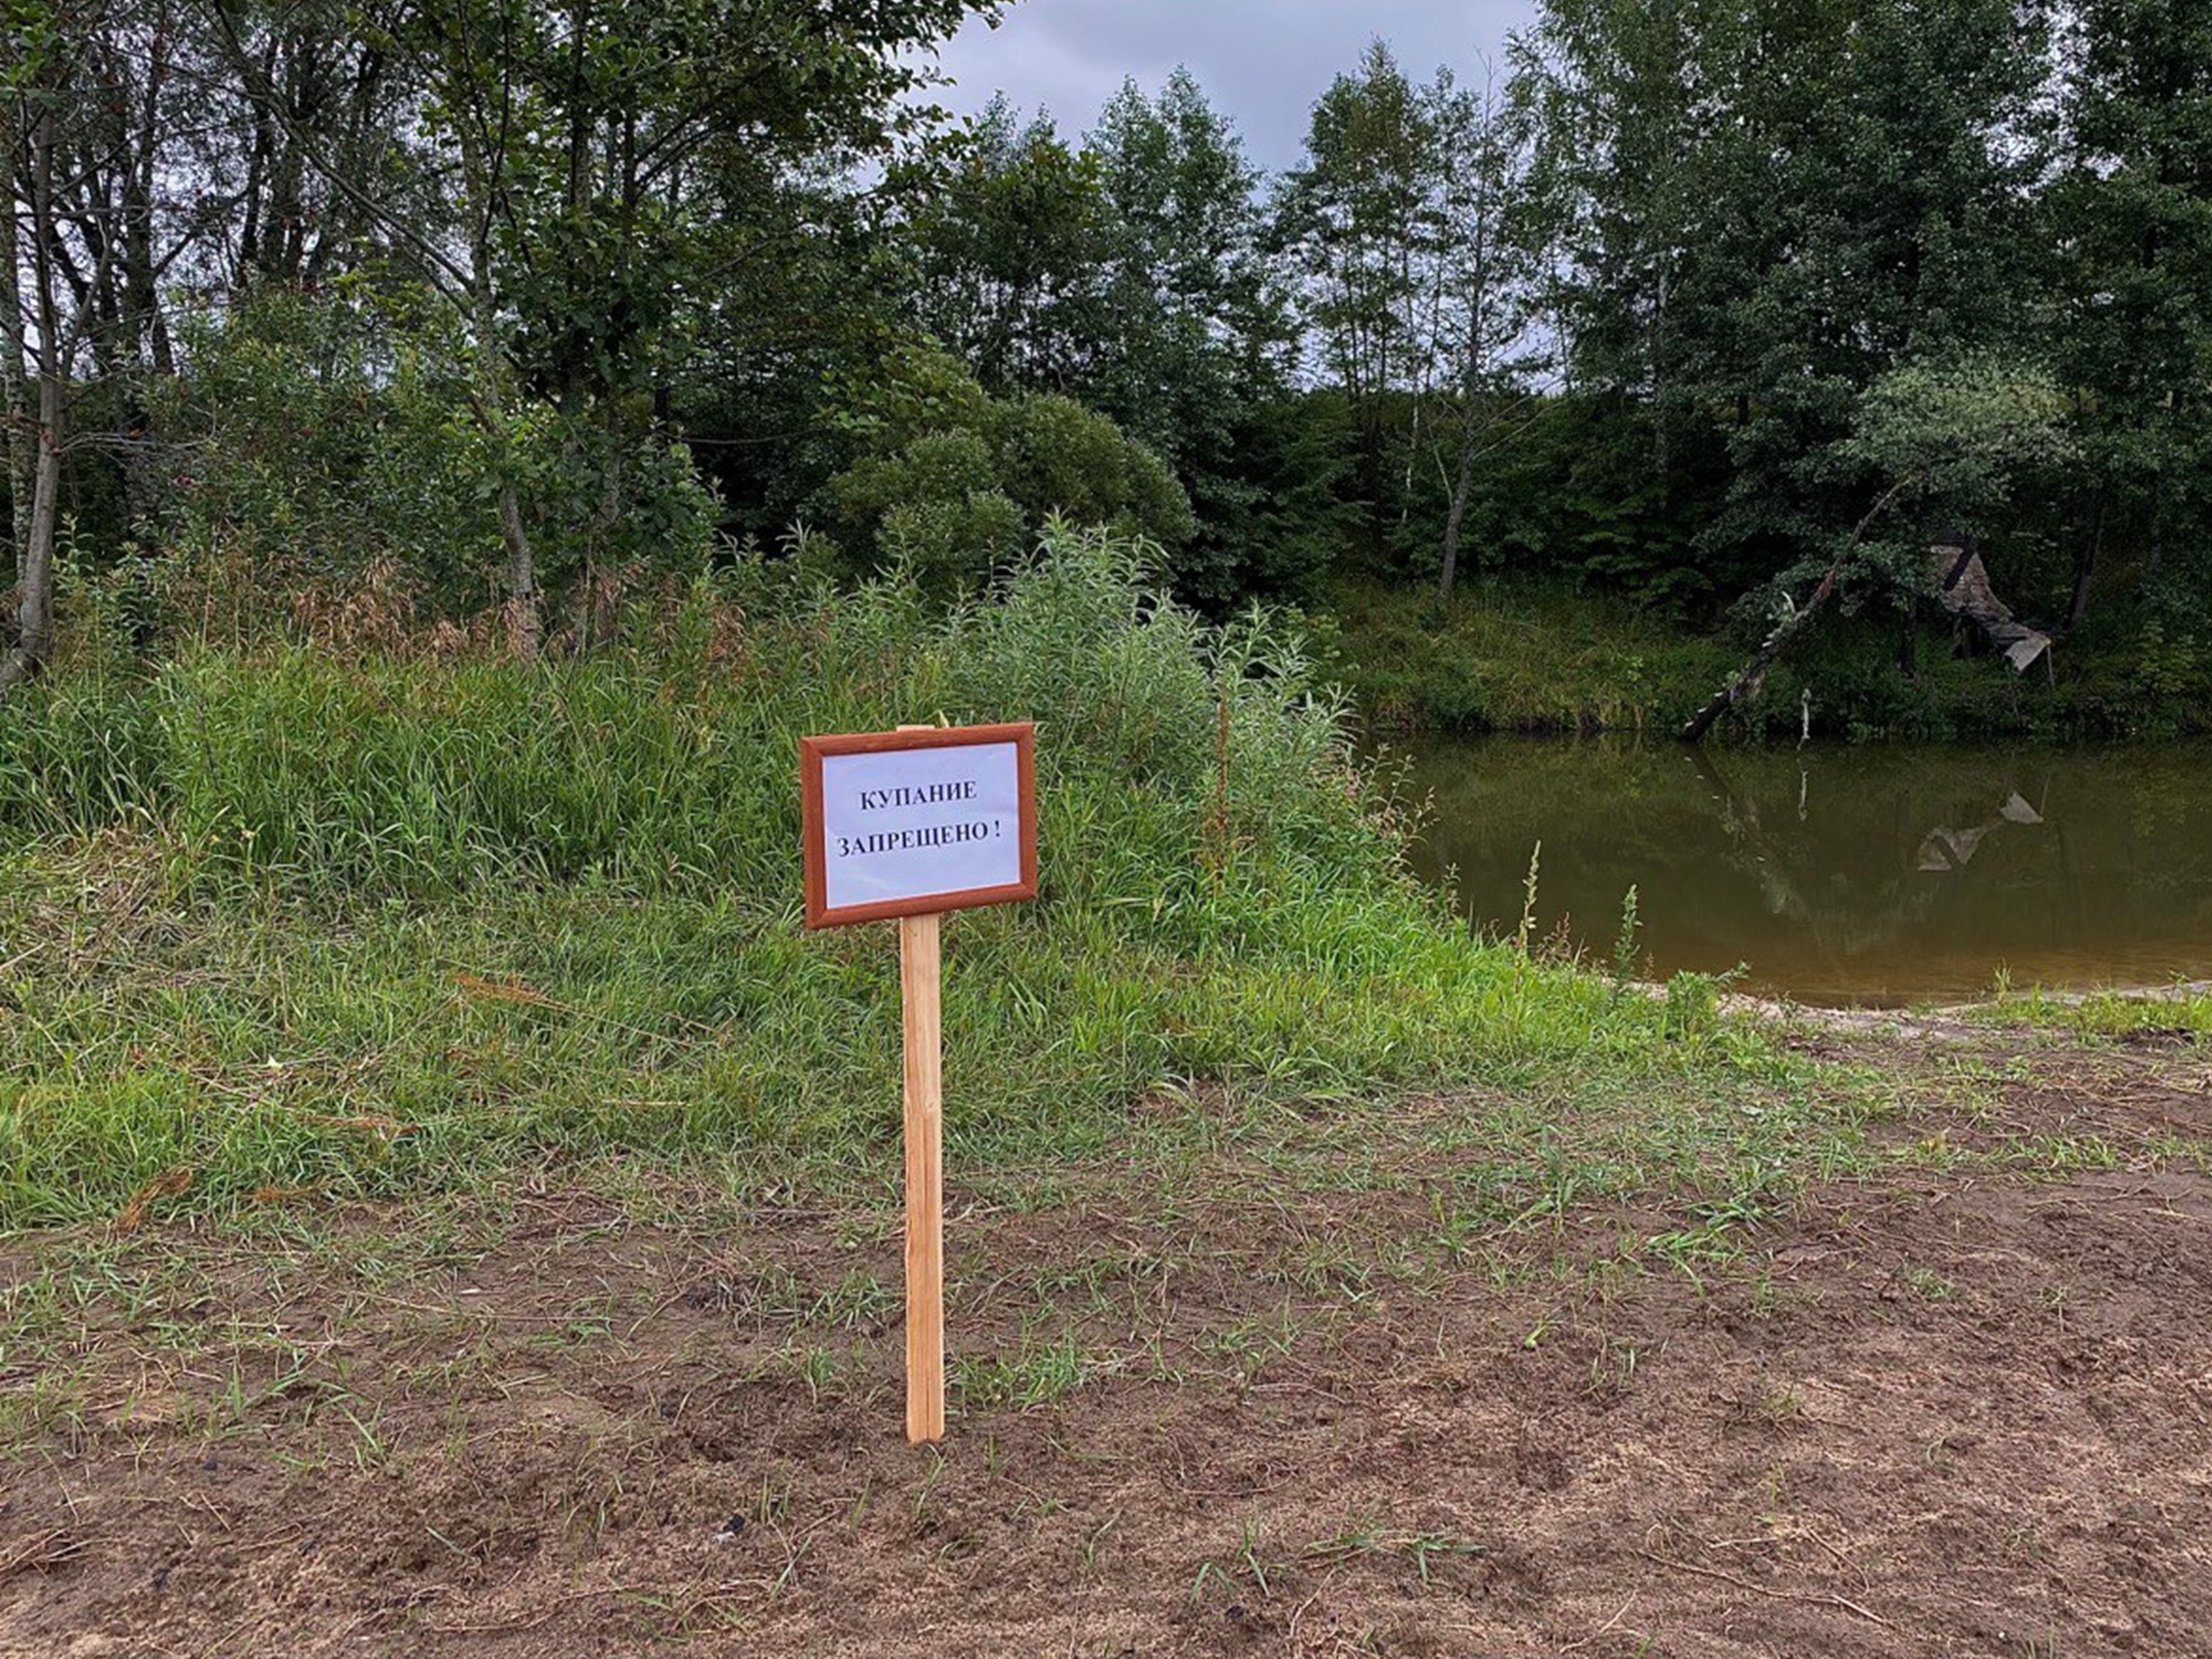 Купание запрещено на реке Вытебеть в д. Дурнево.